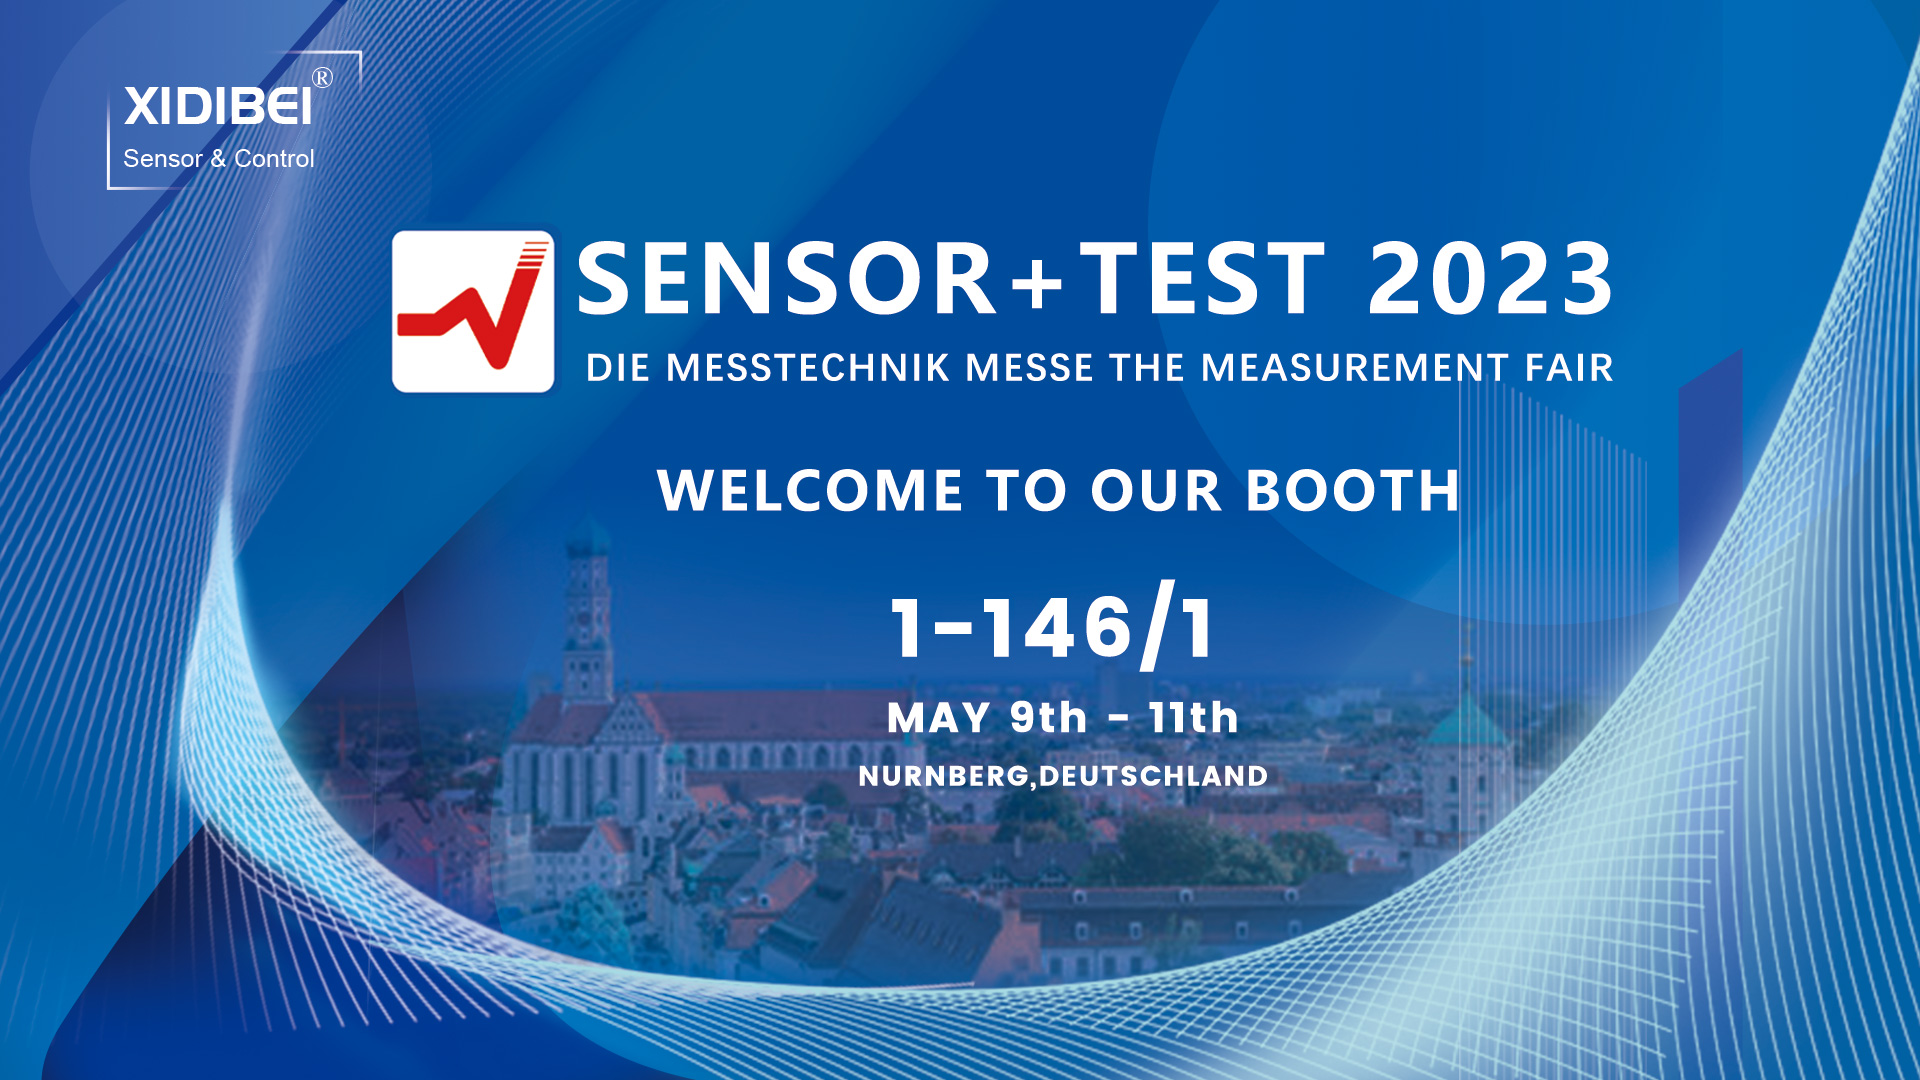 Eine Einladung von XIDIBEI zur Sensor+Test-Messe 2023 in Nürnberg